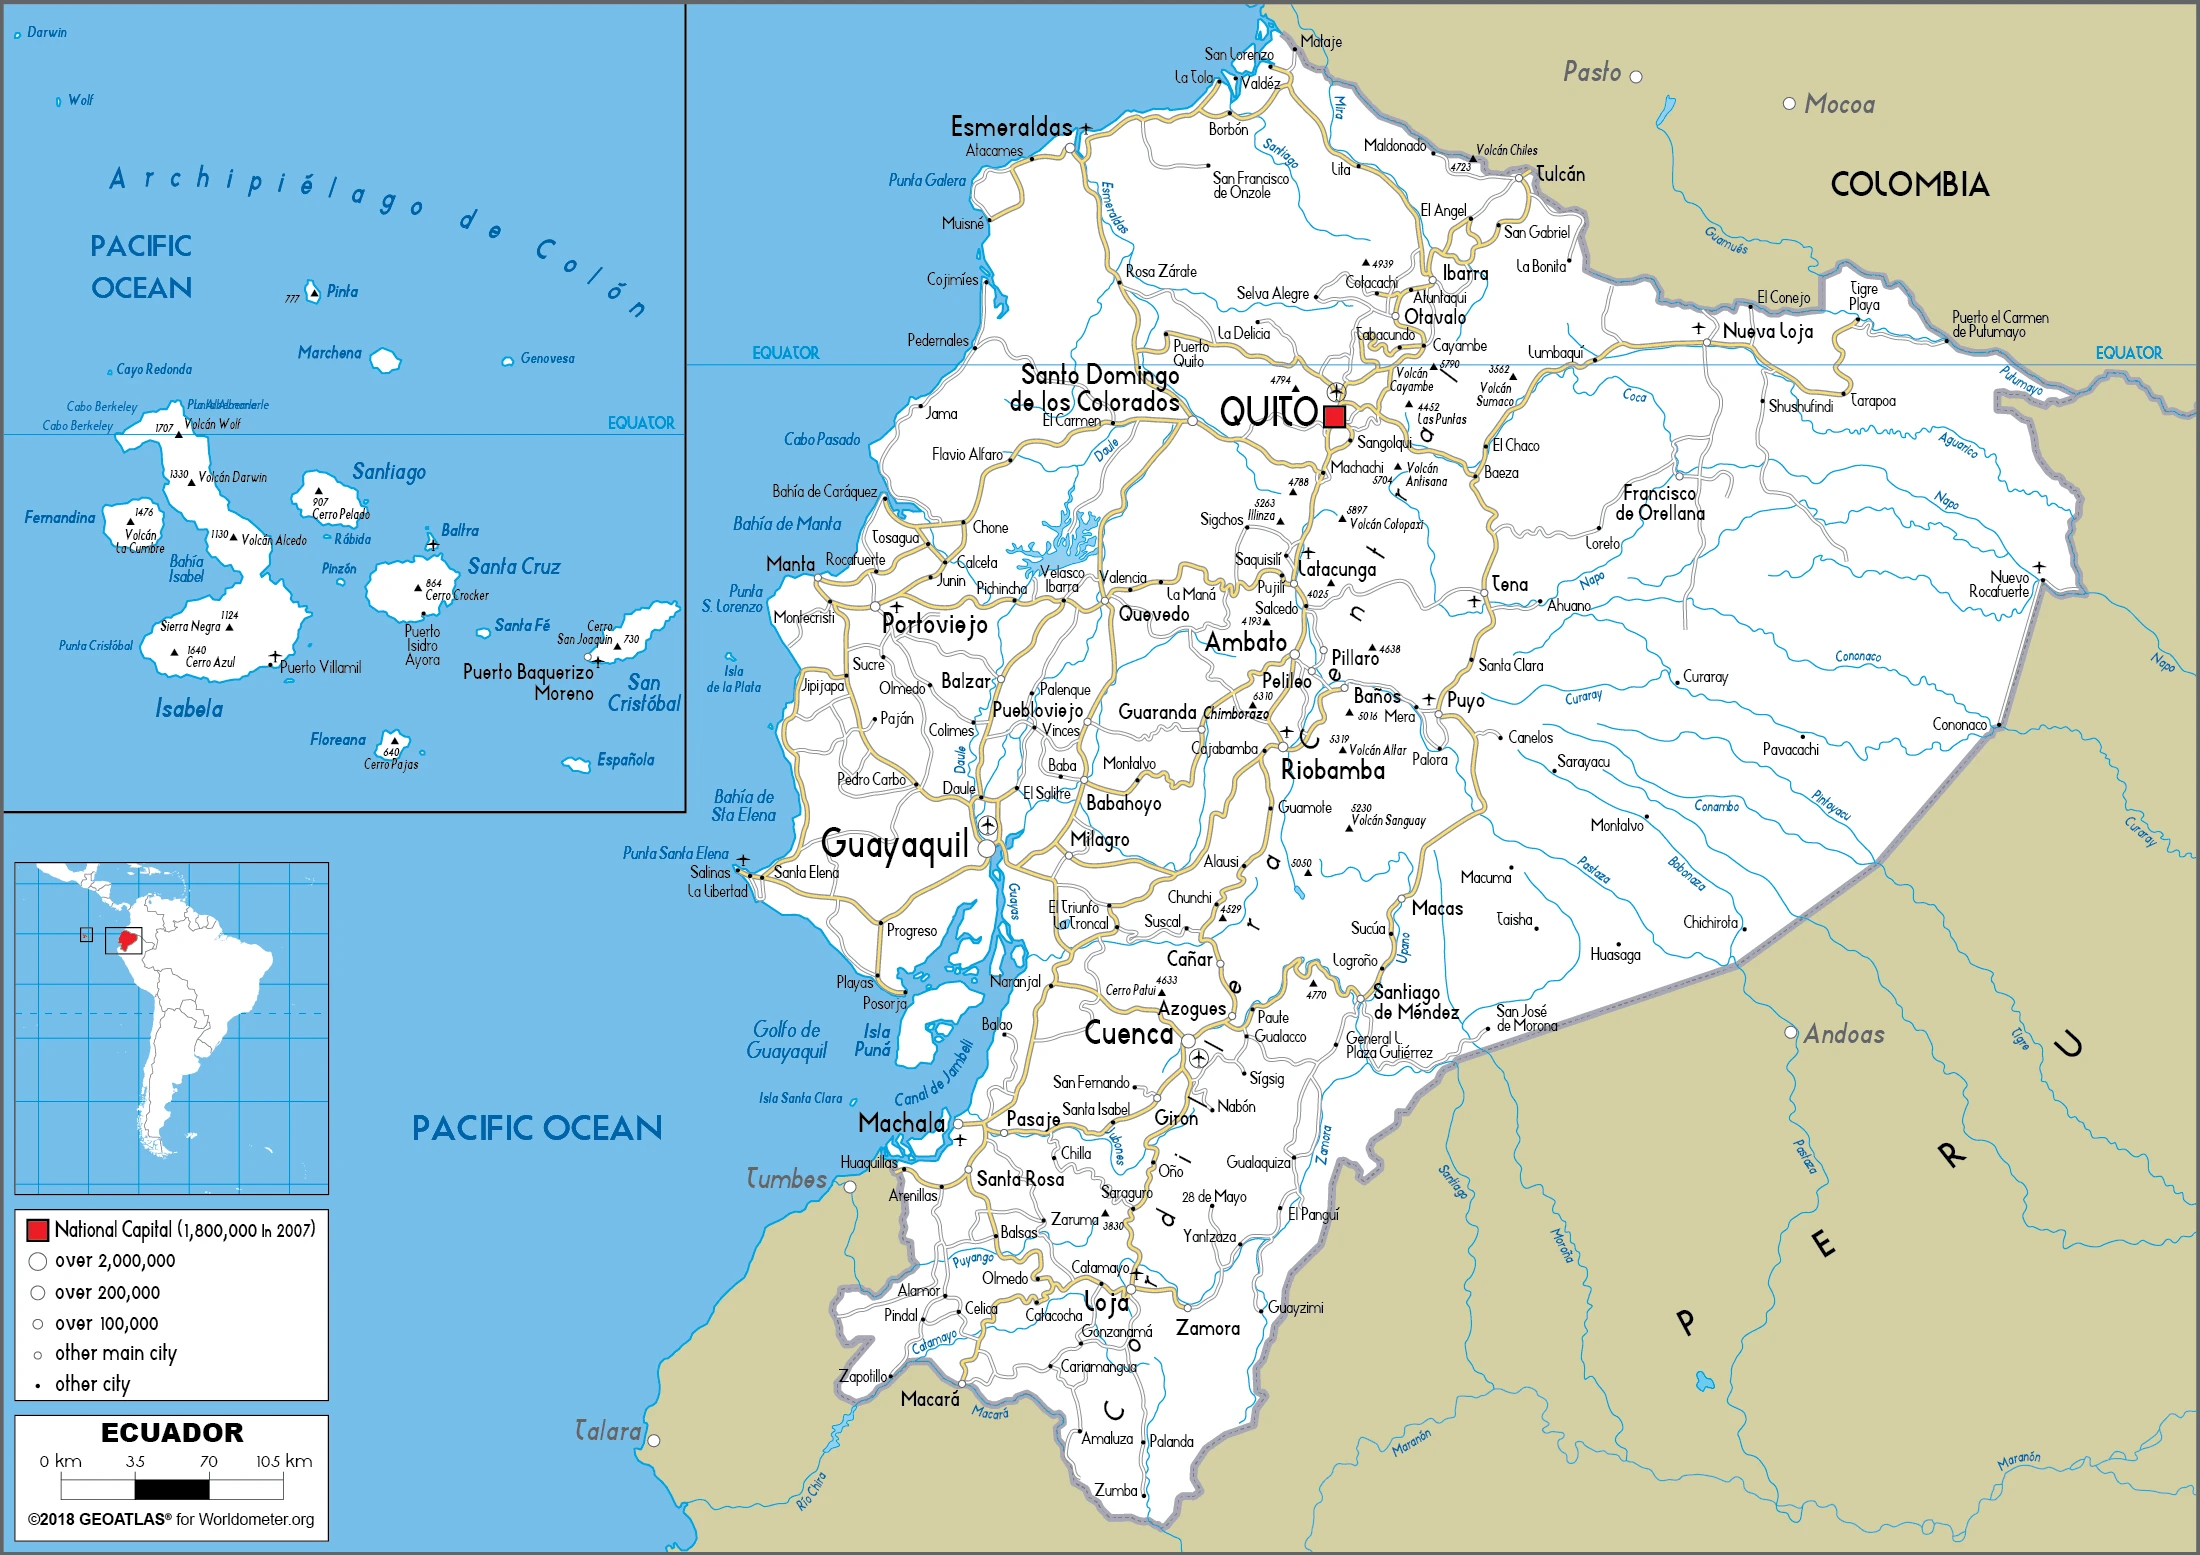 The route plan of the Ecuadorian roadways.